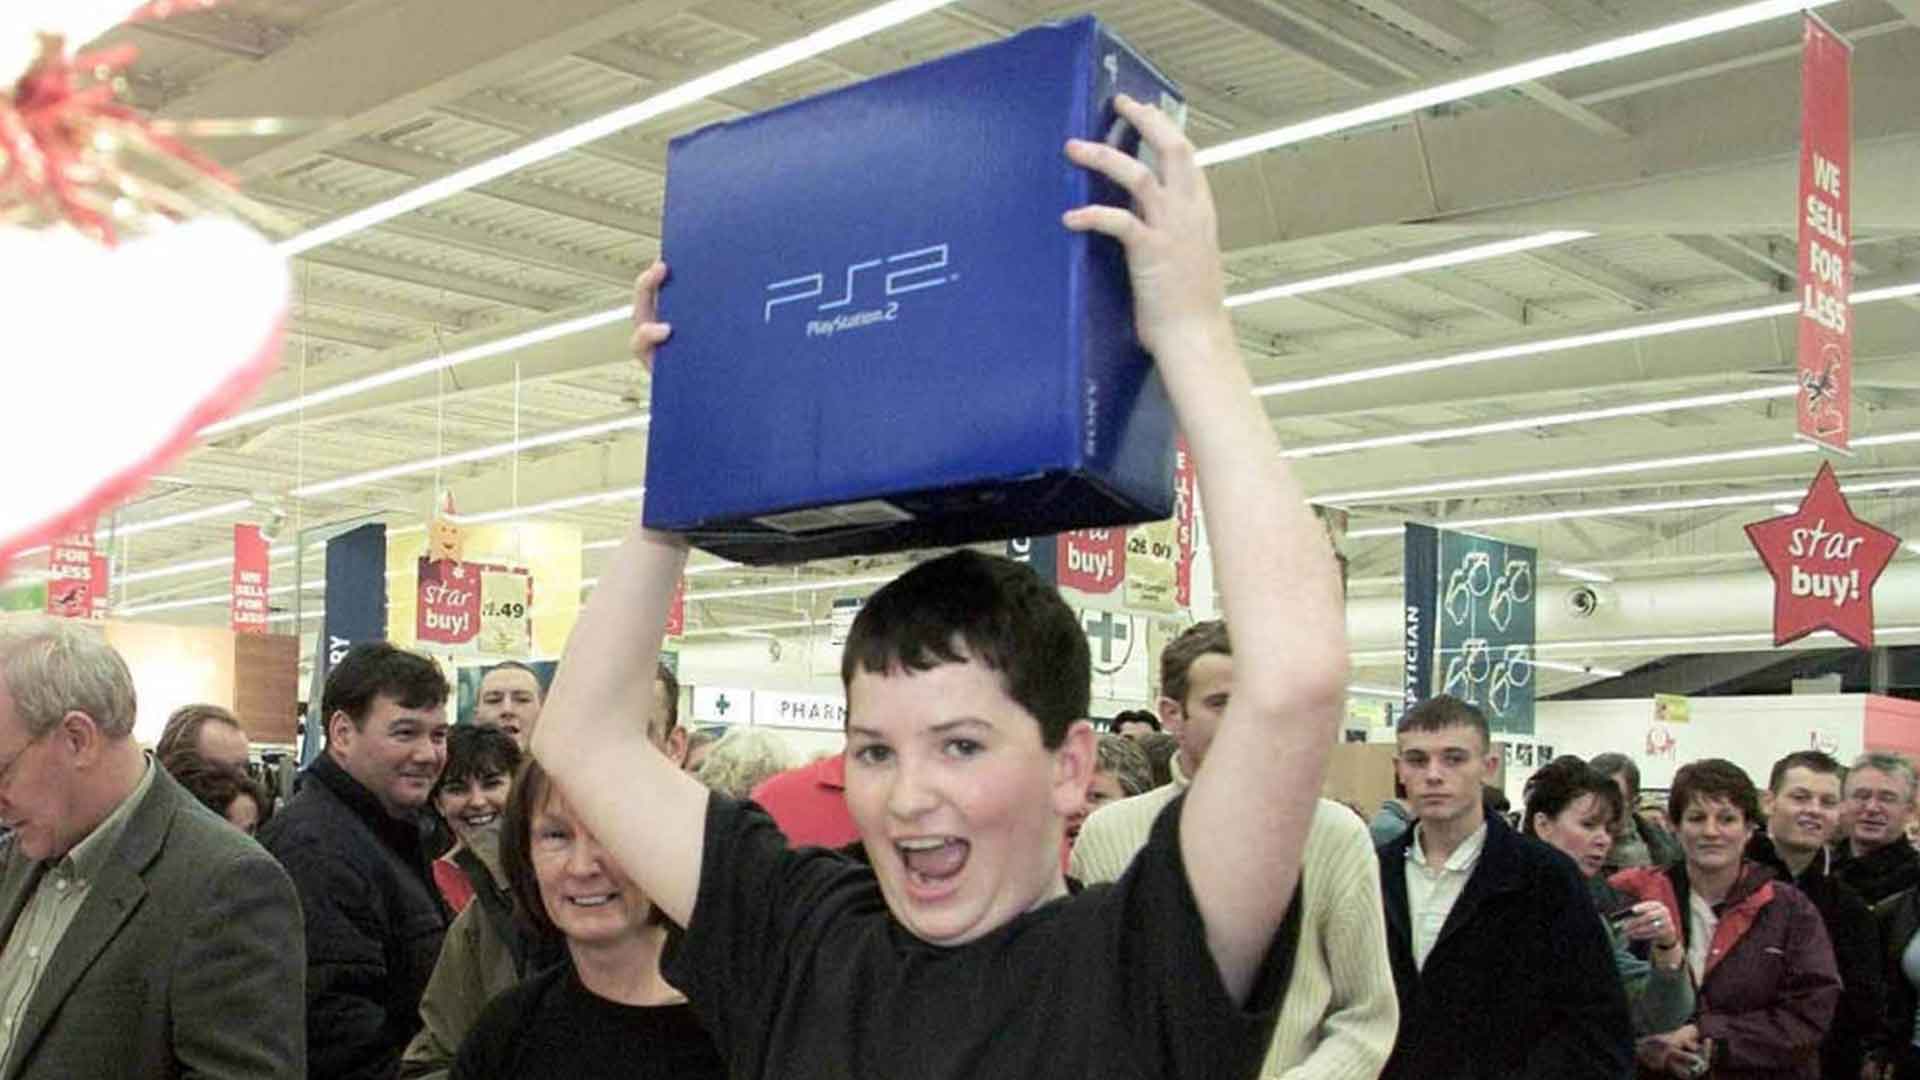 20 anos de PS2: os 20 jogos mais vendidos e aclamados pela crítica